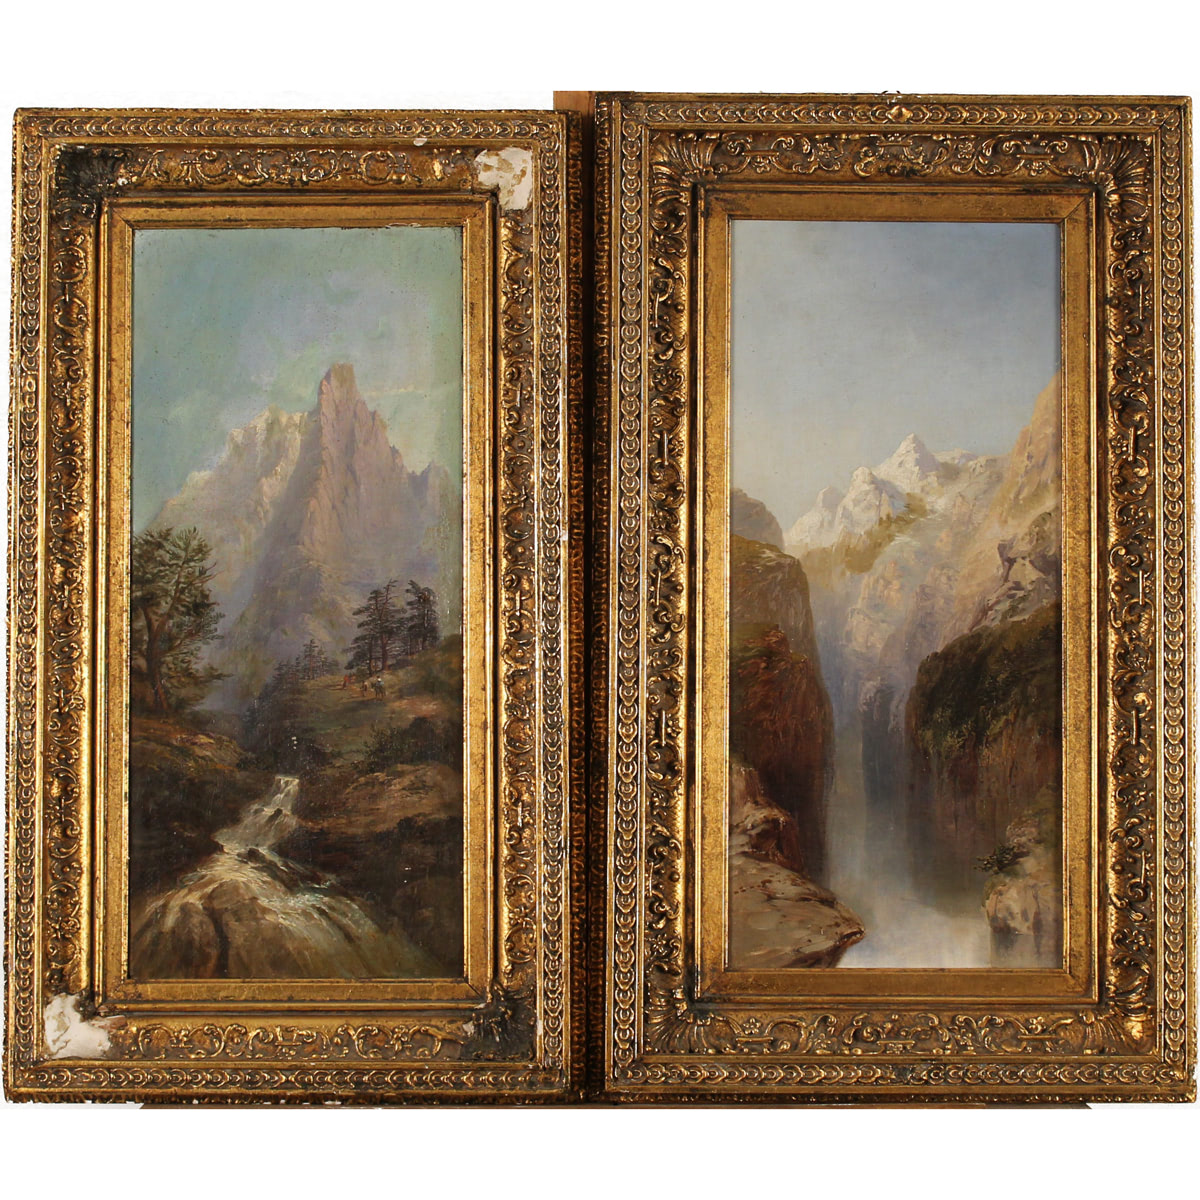 Scuola inglese della fine del secolo XIX "Paesaggi montuosi" - English school of the late 19th century "Mountain landscapes"